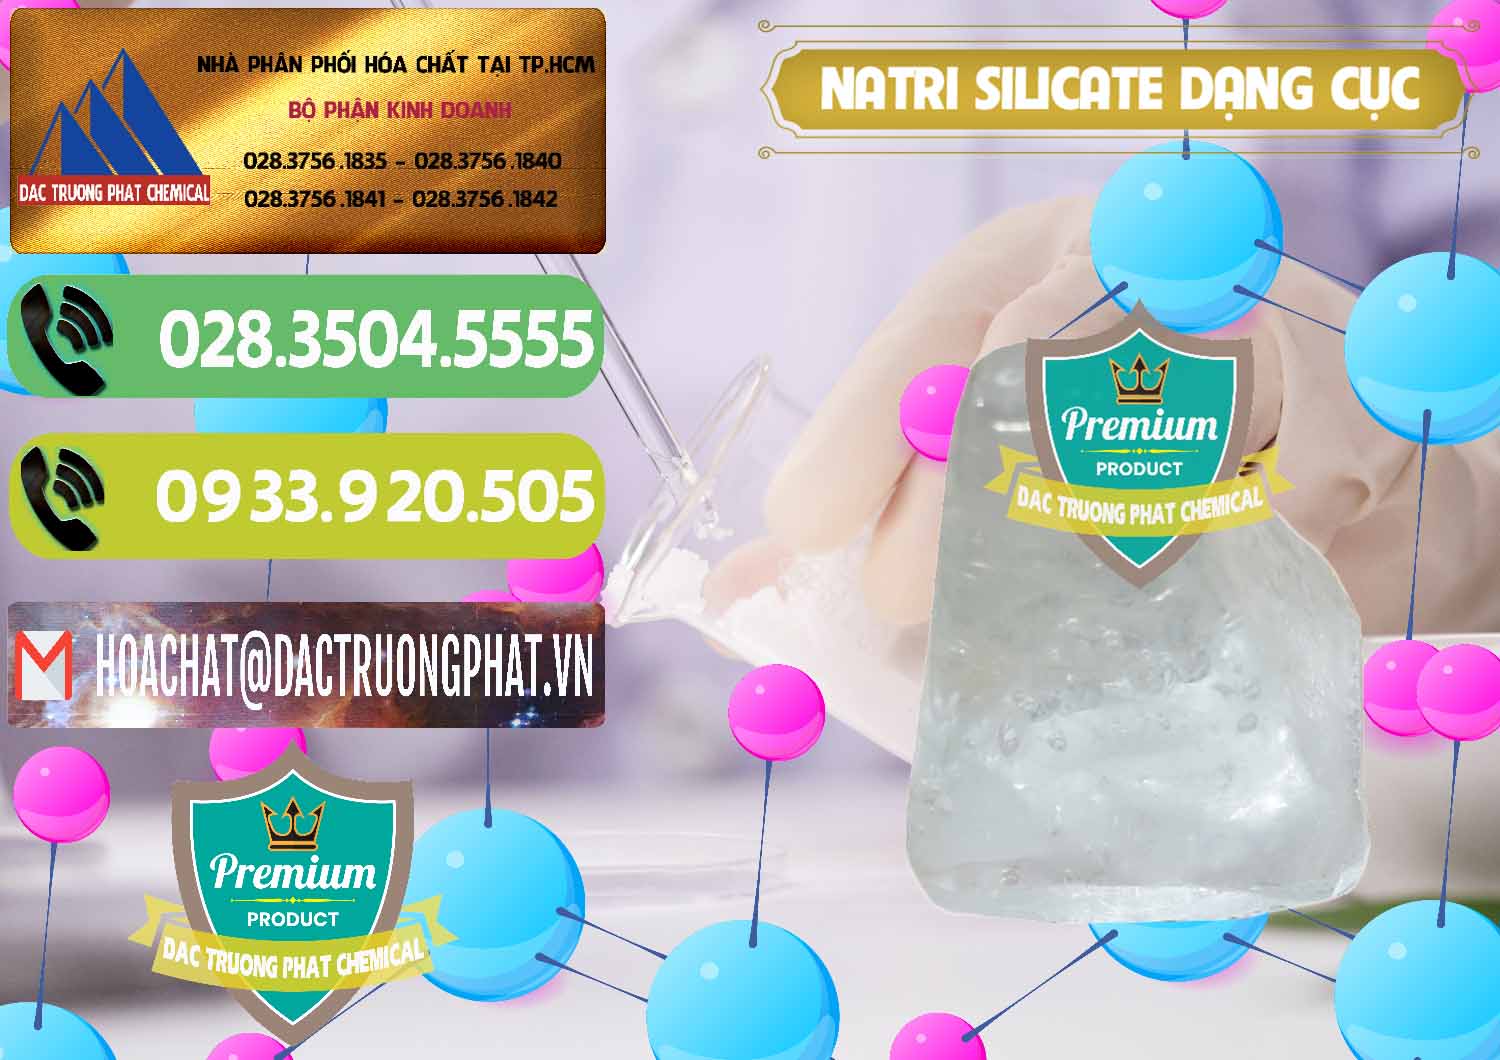 Đơn vị bán và cung cấp Natri Silicate - Na2SiO3 - Keo Silicate Dạng Cục Ấn Độ India - 0382 - Công ty chuyên nhập khẩu _ phân phối hóa chất tại TP.HCM - hoachatmientay.vn